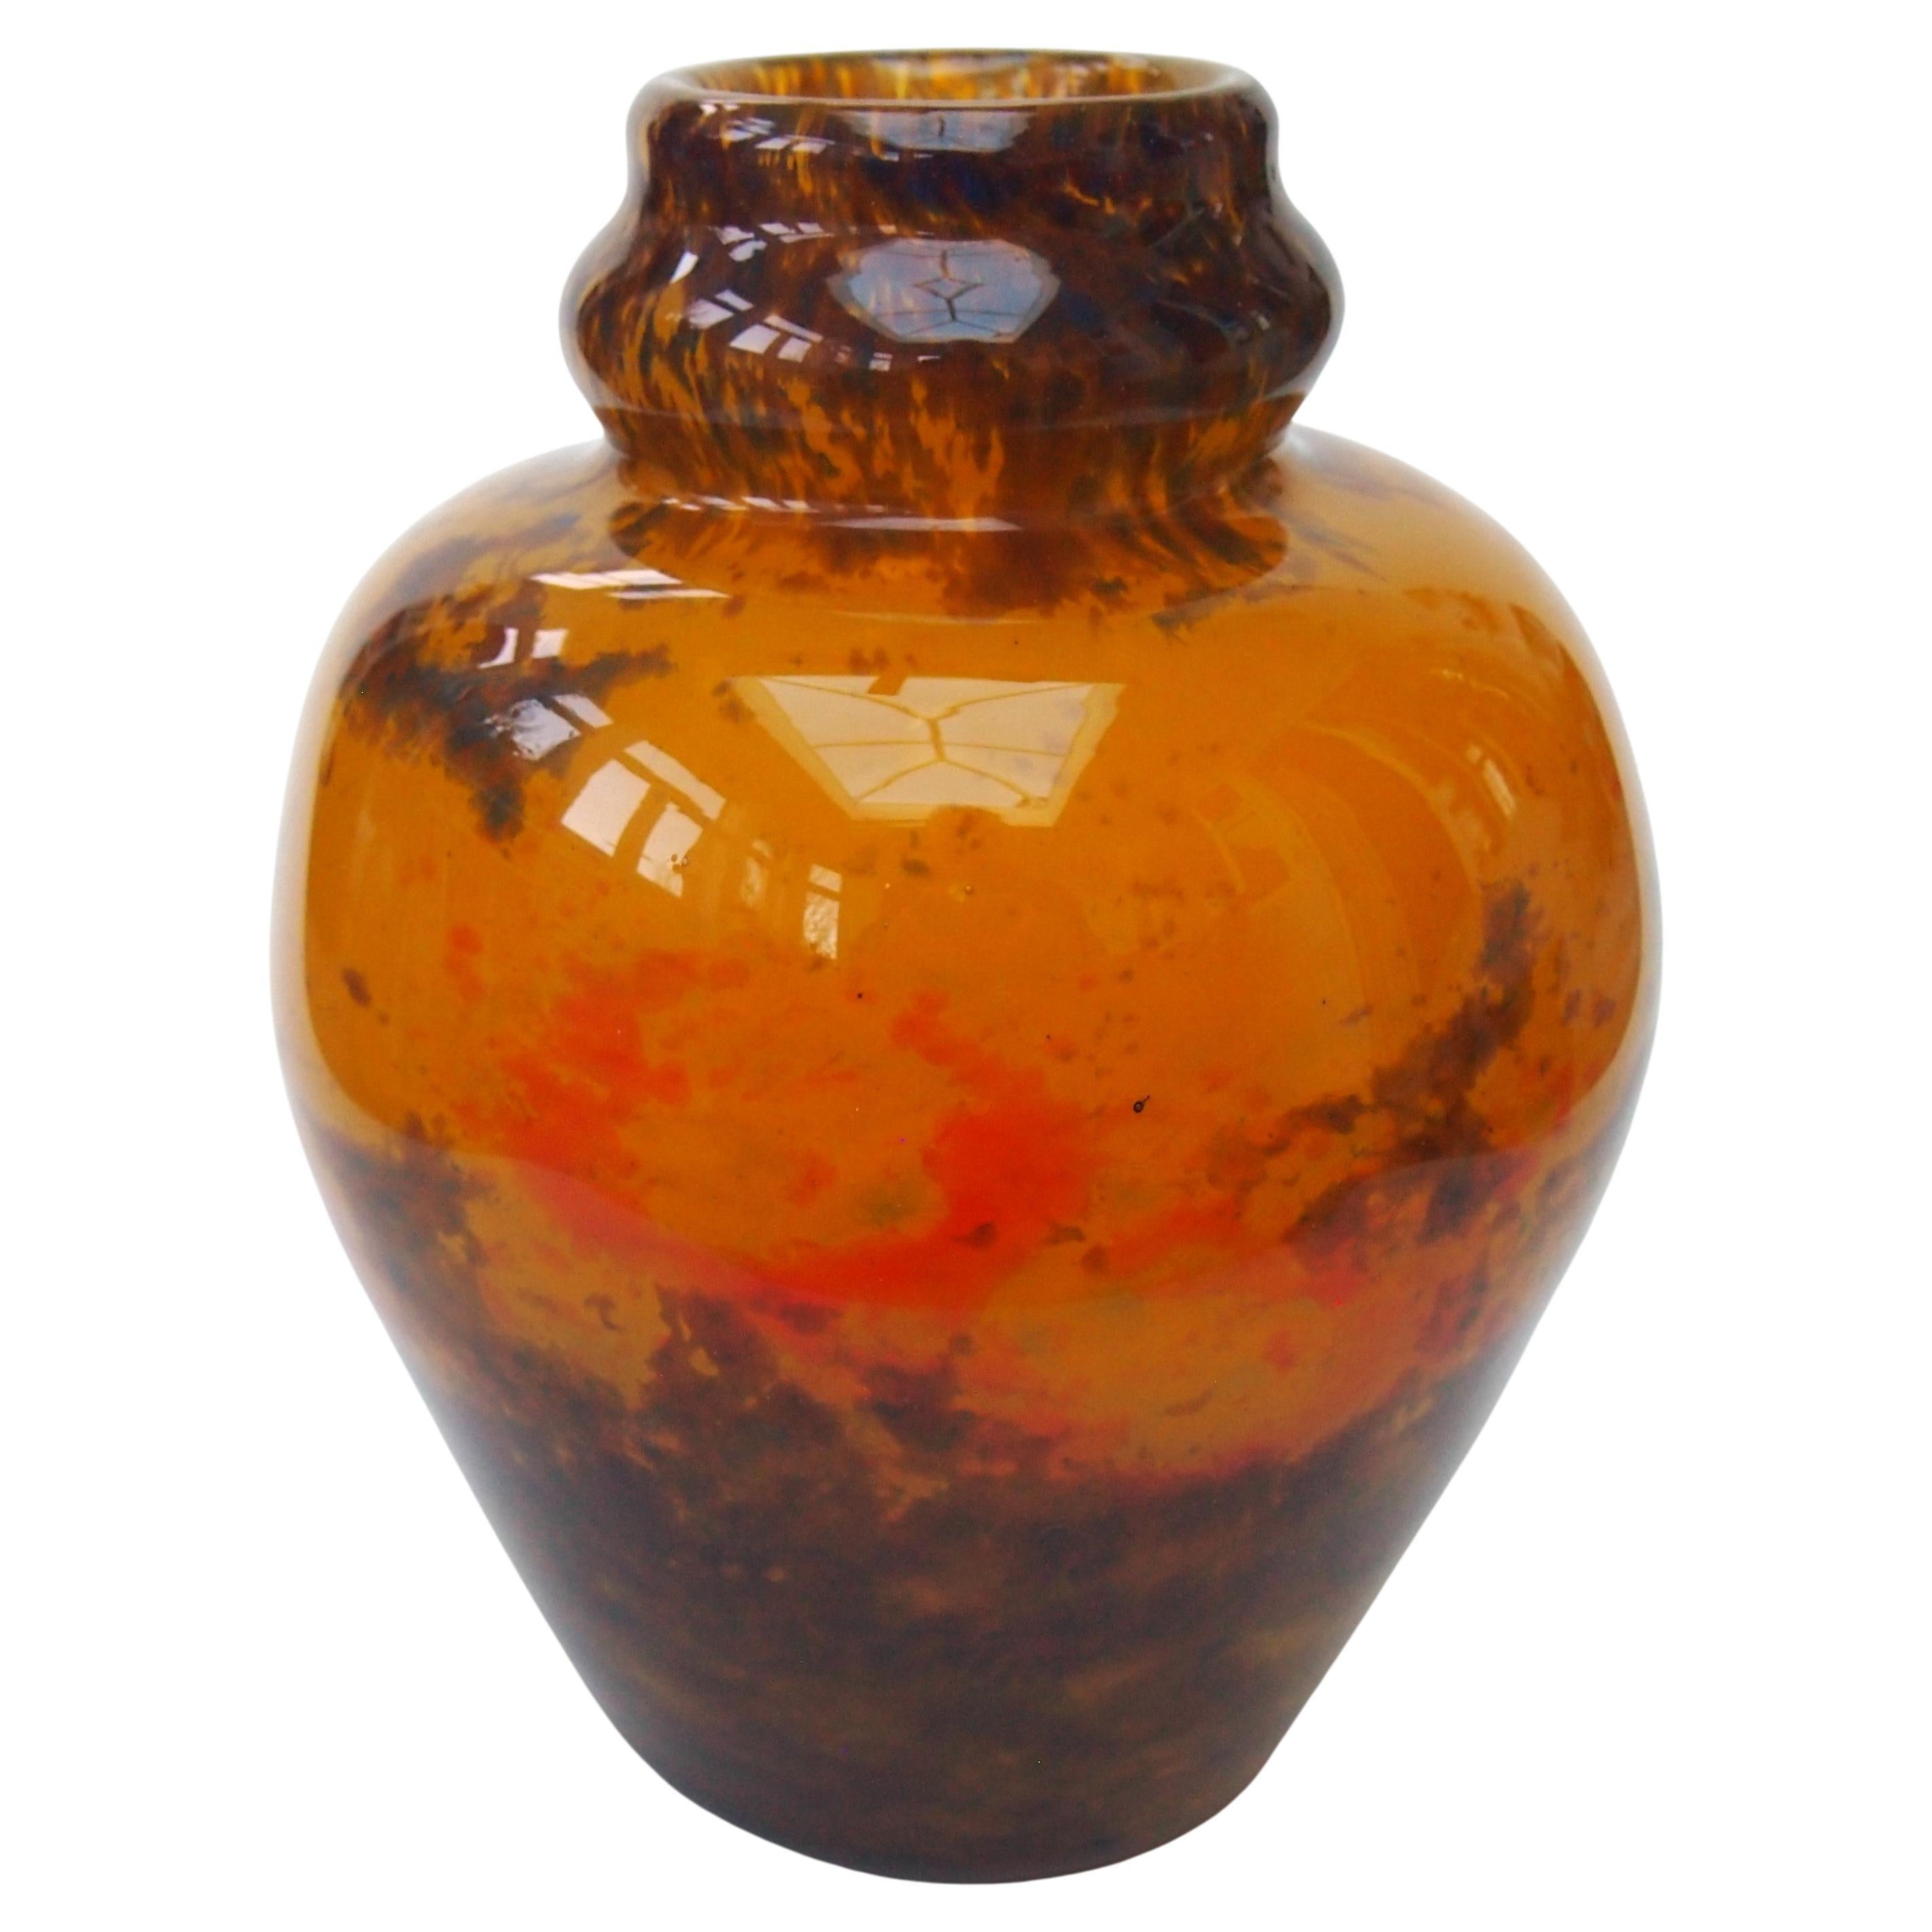 Remarquable vase à boules Jades en verre polychrome Muller Freres, datant d'environ 1920, signé